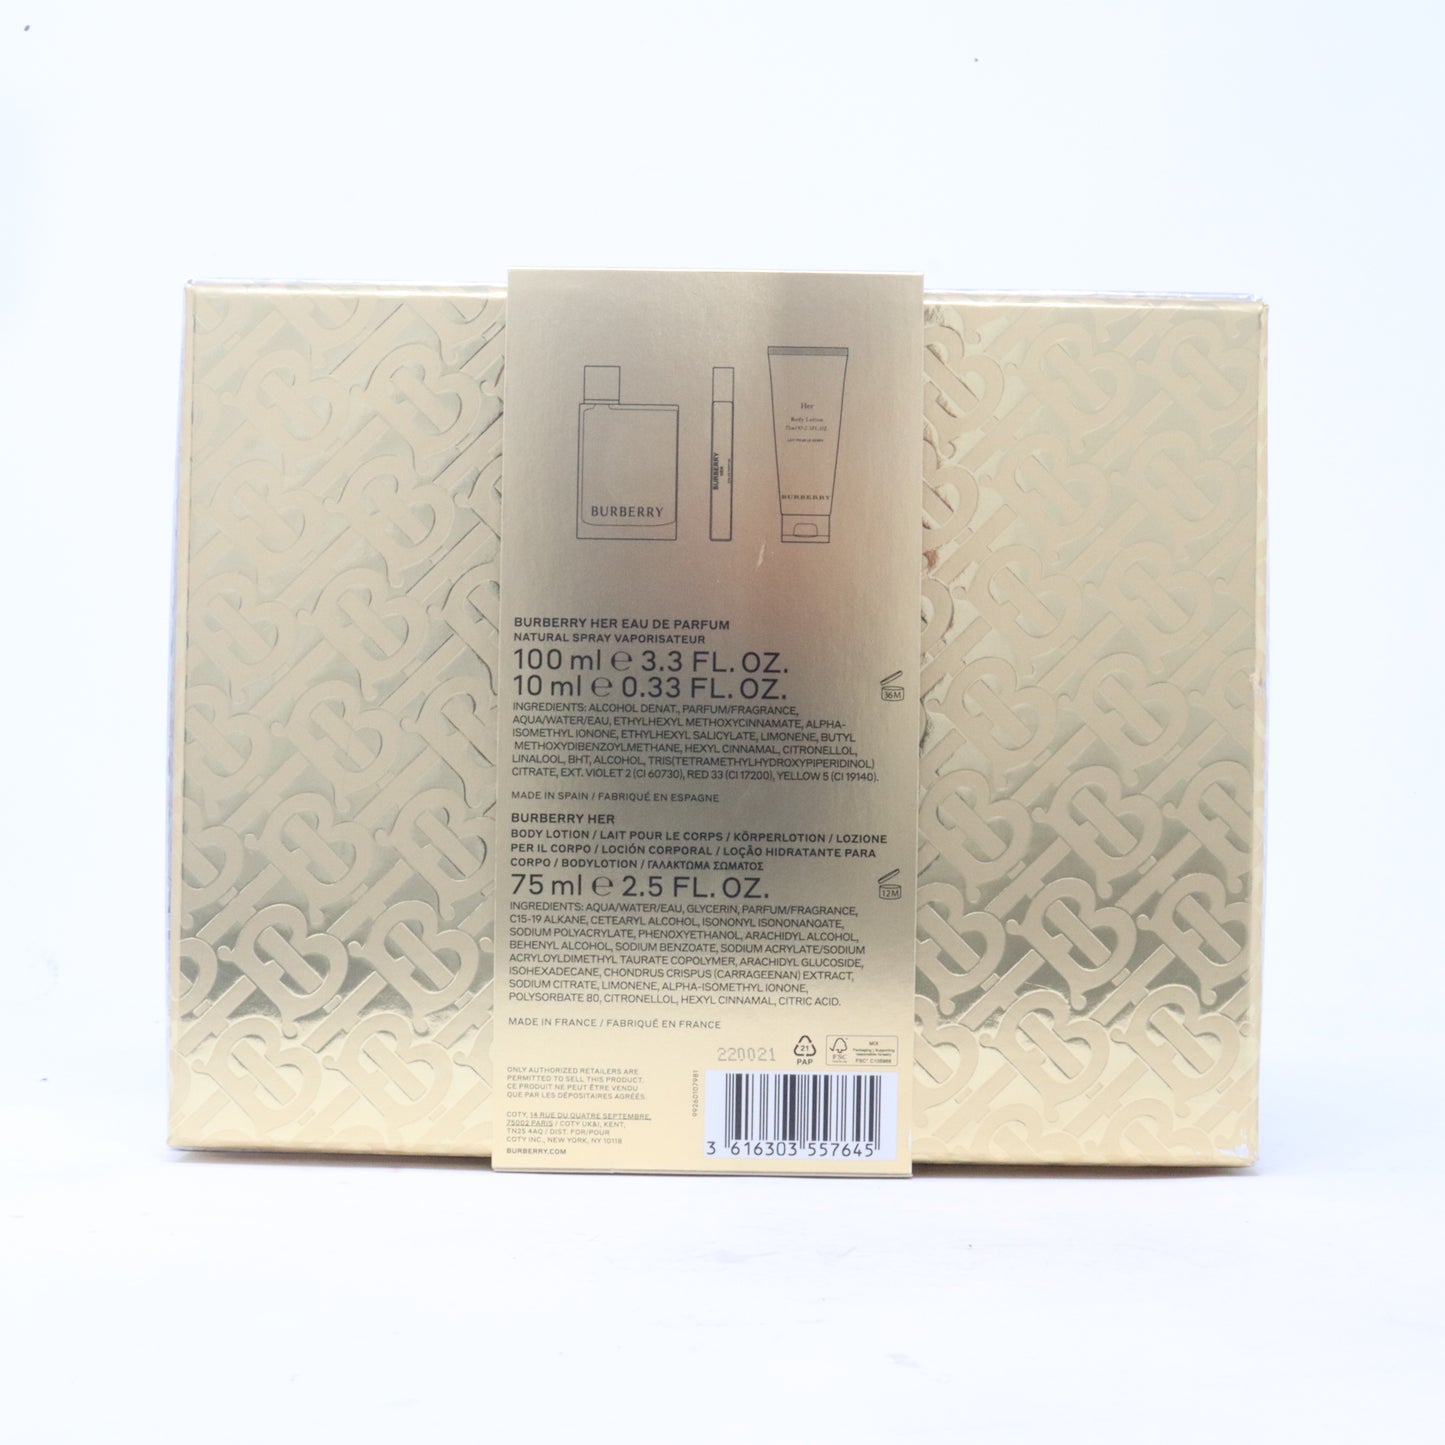 Burberry Her Eau De Parfum 3-Pcs Gift Set  / New With Box